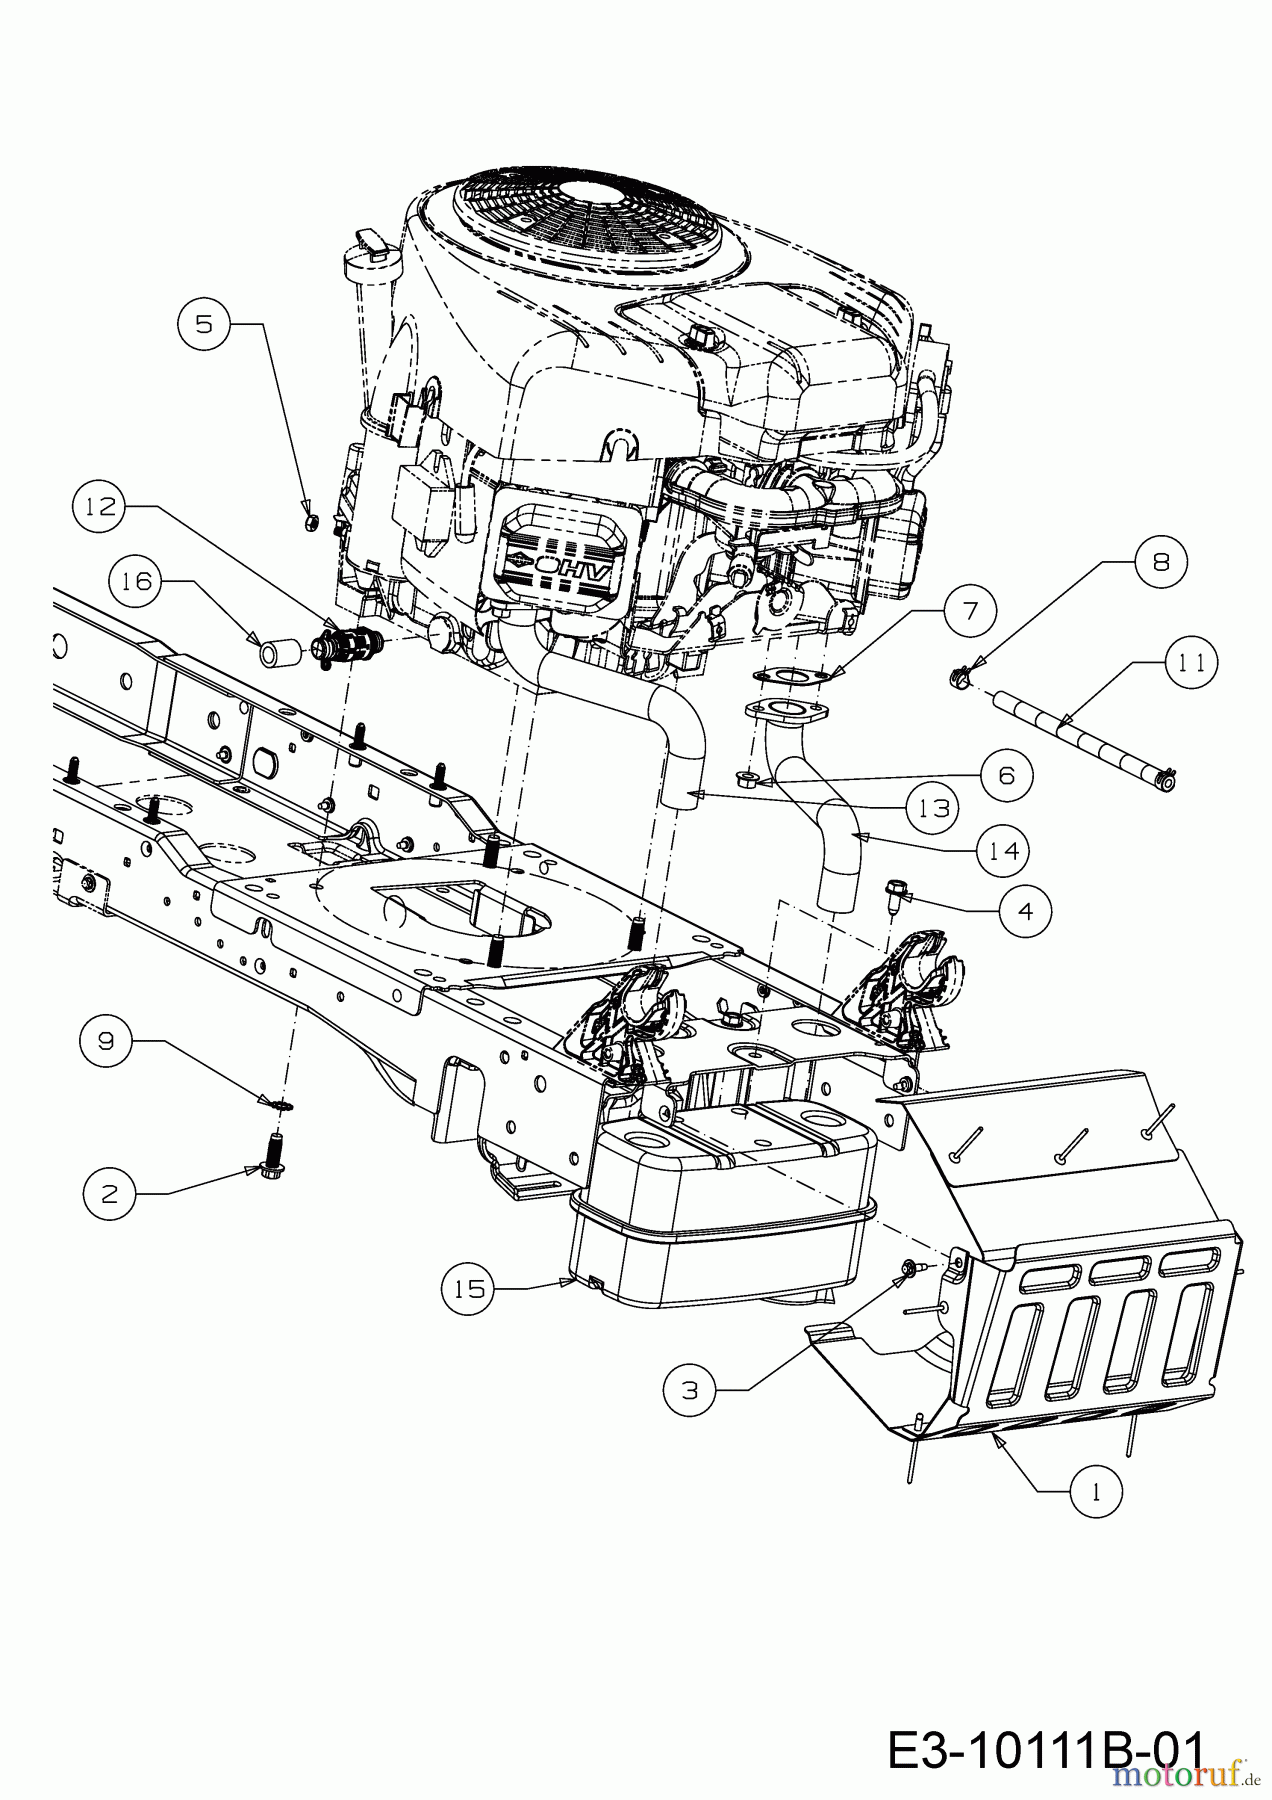  Wolf-Garten Lawn tractors 106.220 H 13CAA1VR650  (2019) Engine accessories